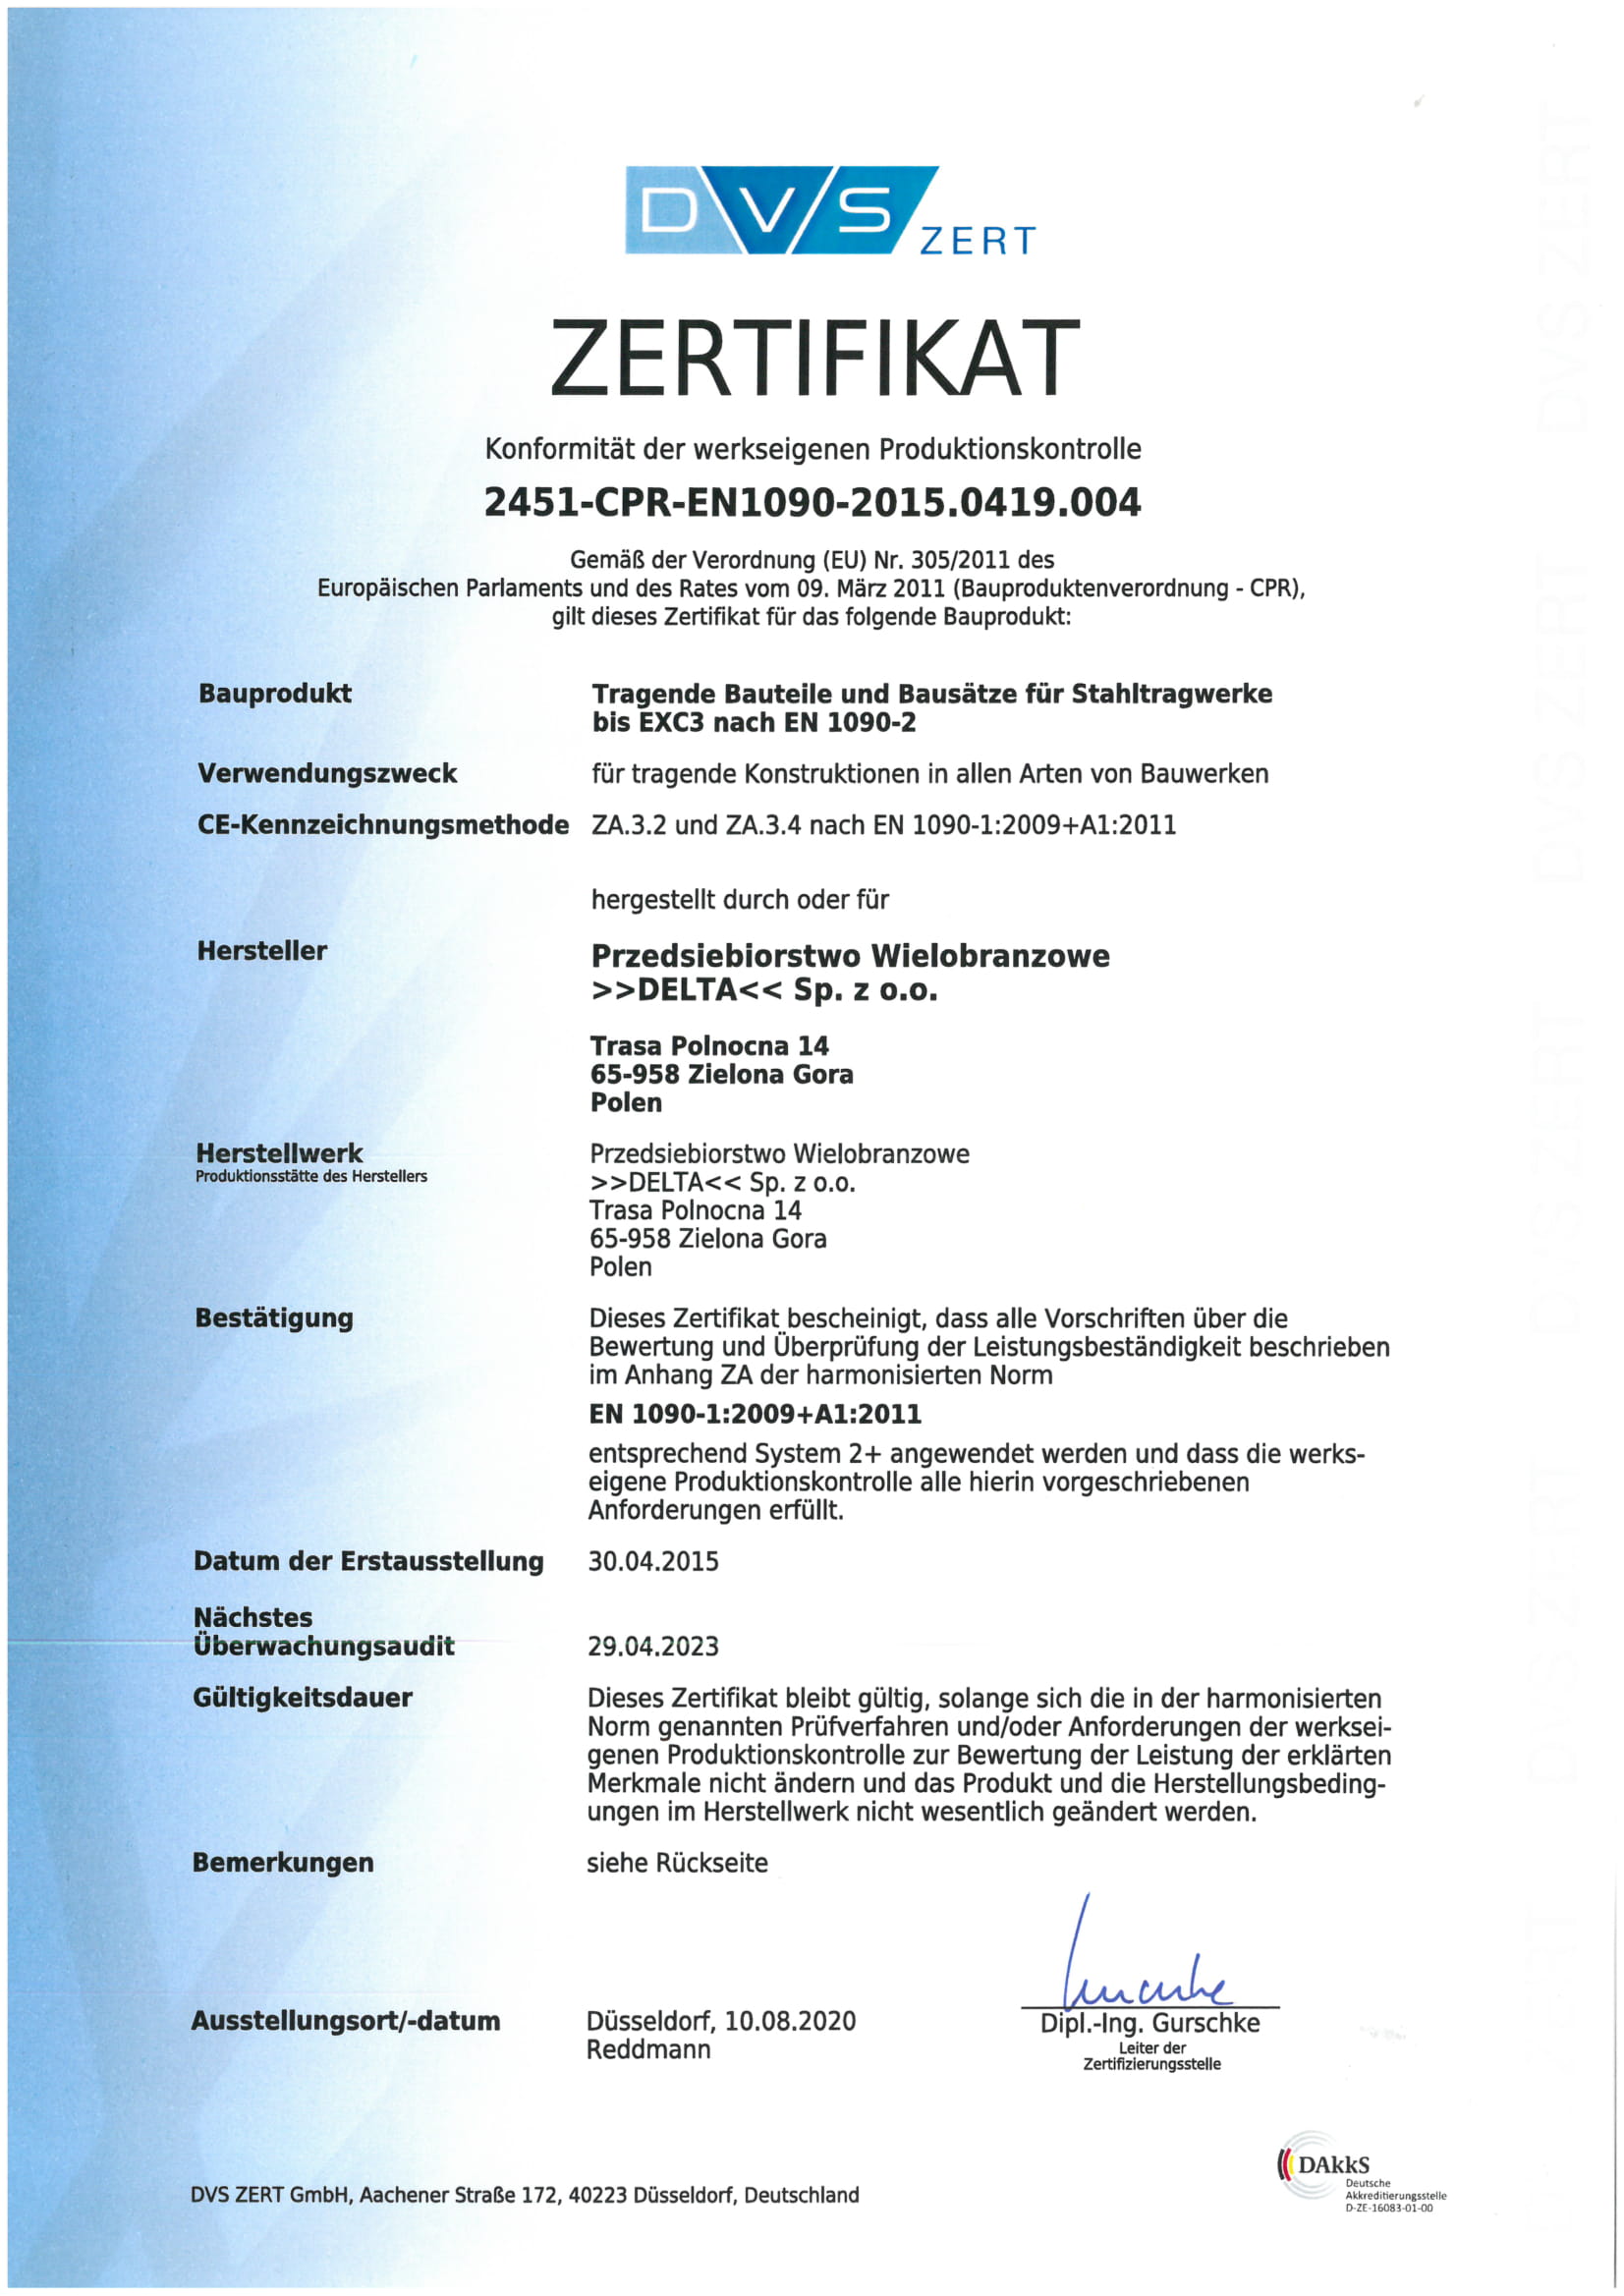 certyfikat zgodności w języku niemieckim